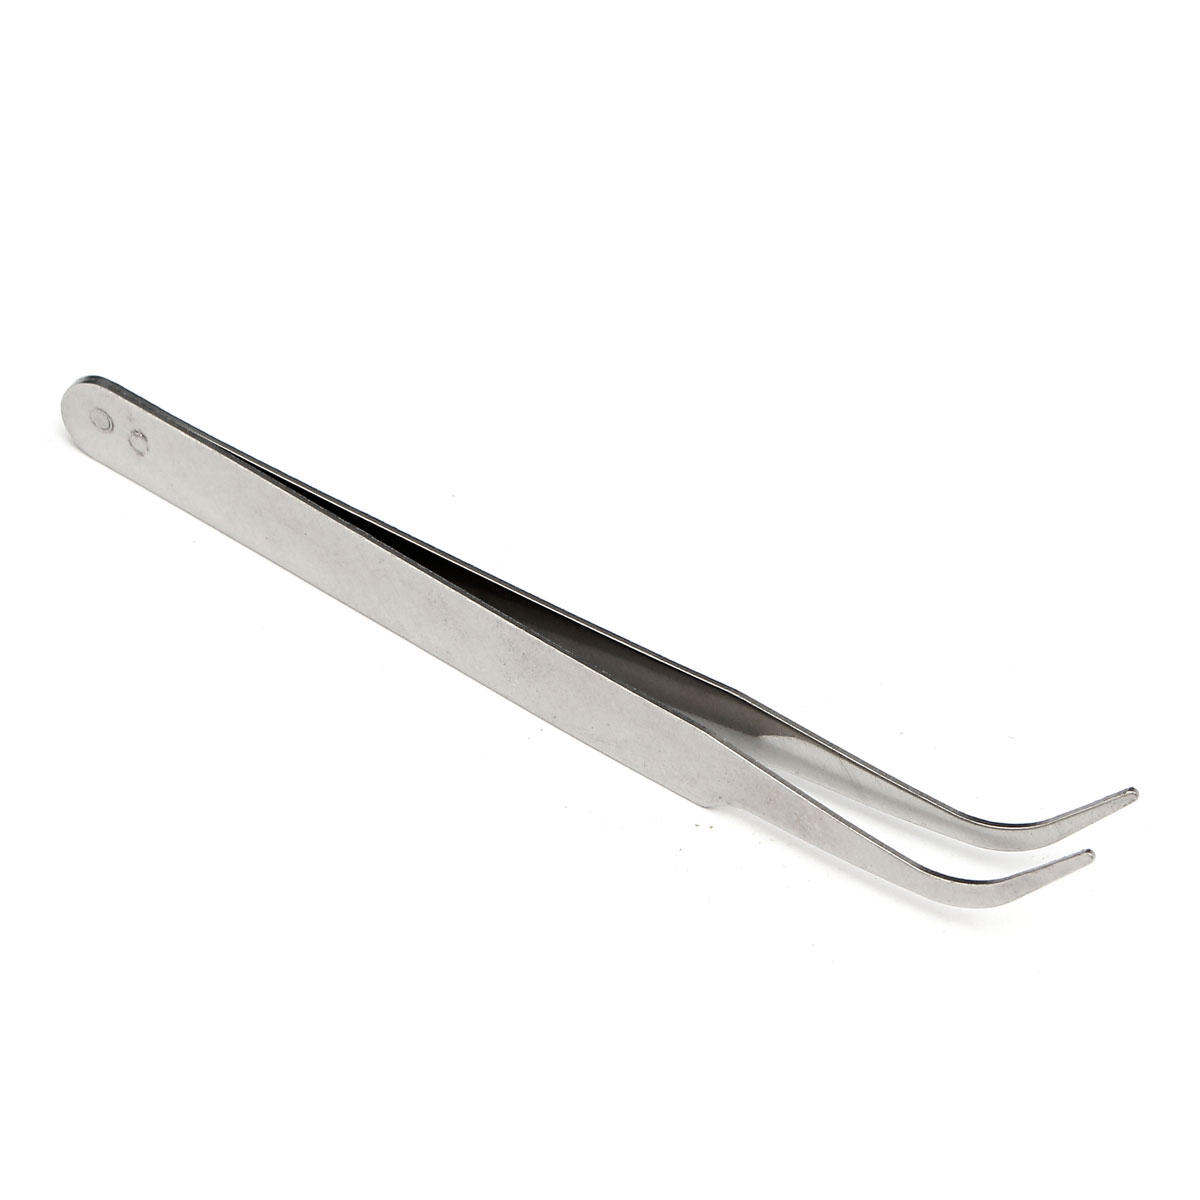 100mm-Stainless-Steel-High-Precision-Elbow-Tweezers-DIY-Tool-1096797